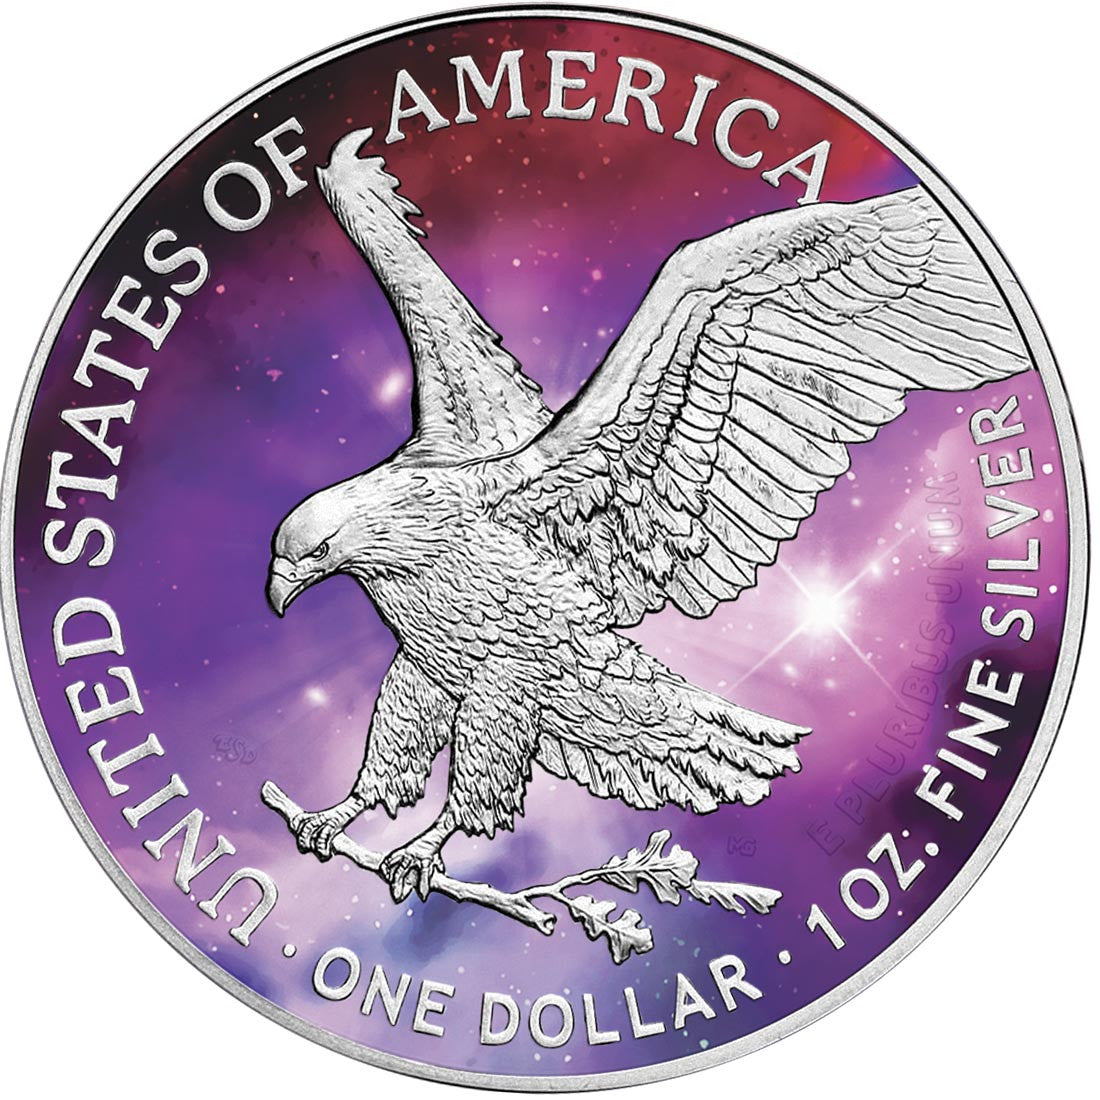 USA 2022 American Eagle 1oz .999 Silver BU Coin - Glowing Galaxy IV